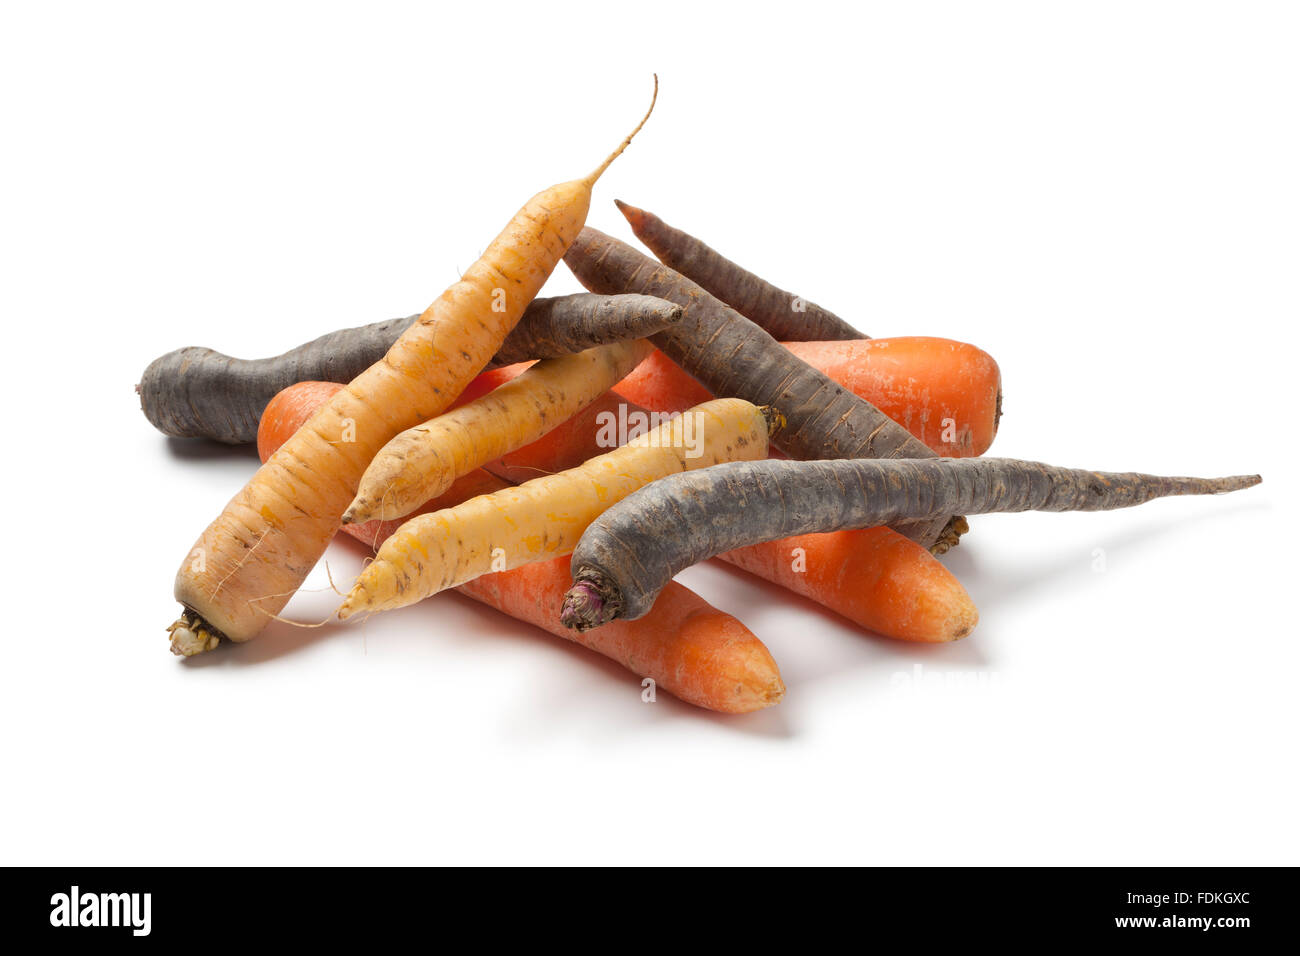 Haufen von verschiedenen Farben frische Karotten auf weißen backgrpound Stockfoto